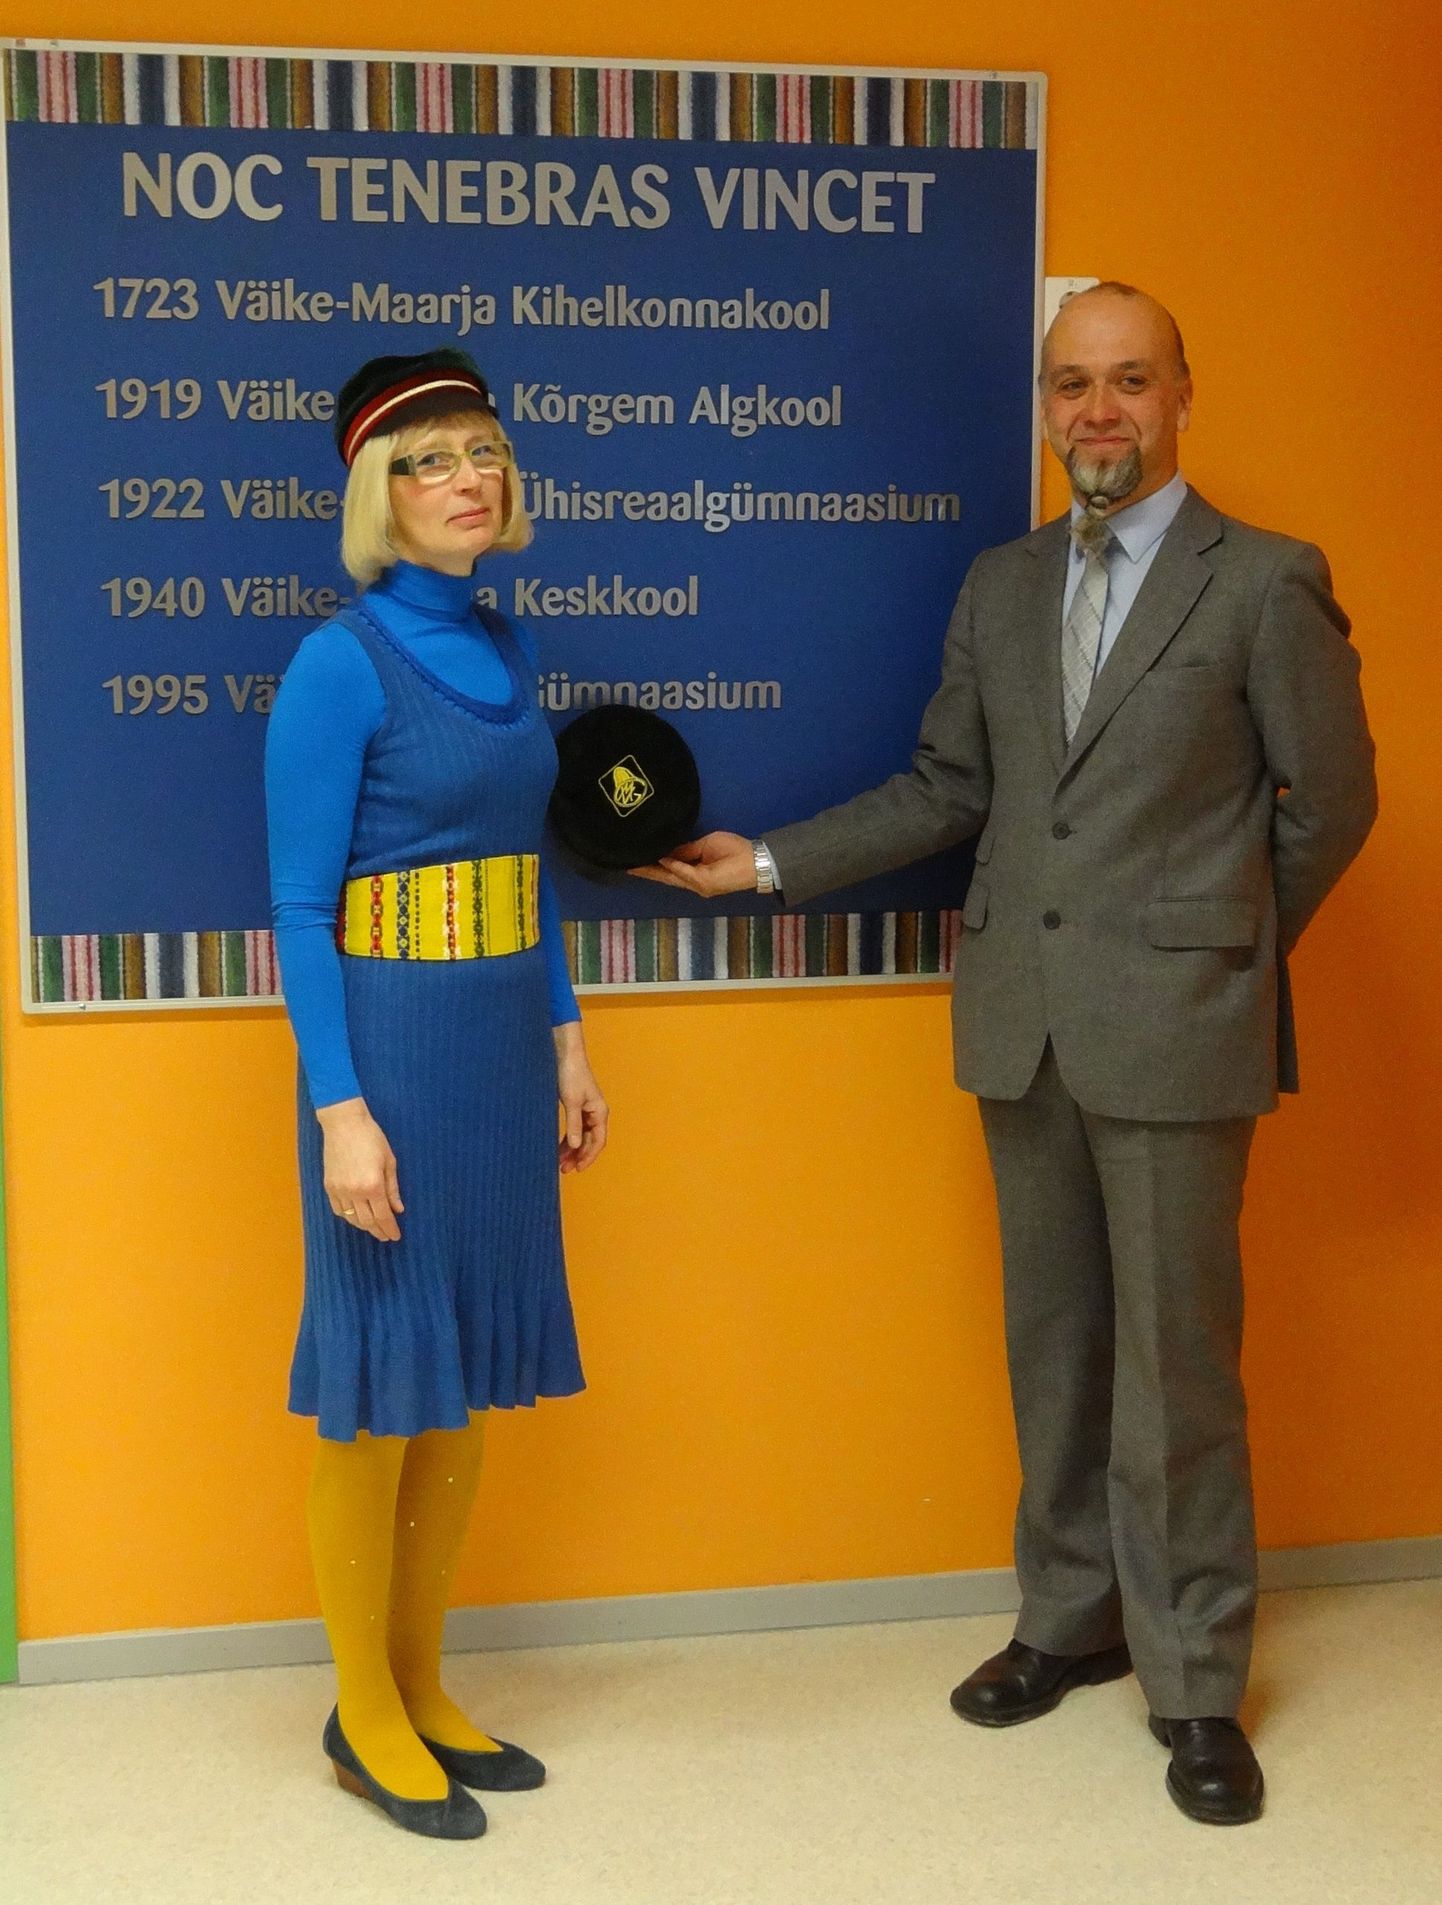 Väike-Maarja gümnaasiumis avati ajalootahvel. Pildil gümnaasiumi direktor Marje Eelmaa ja vilistlaskogu esimees Raimo Maasik.